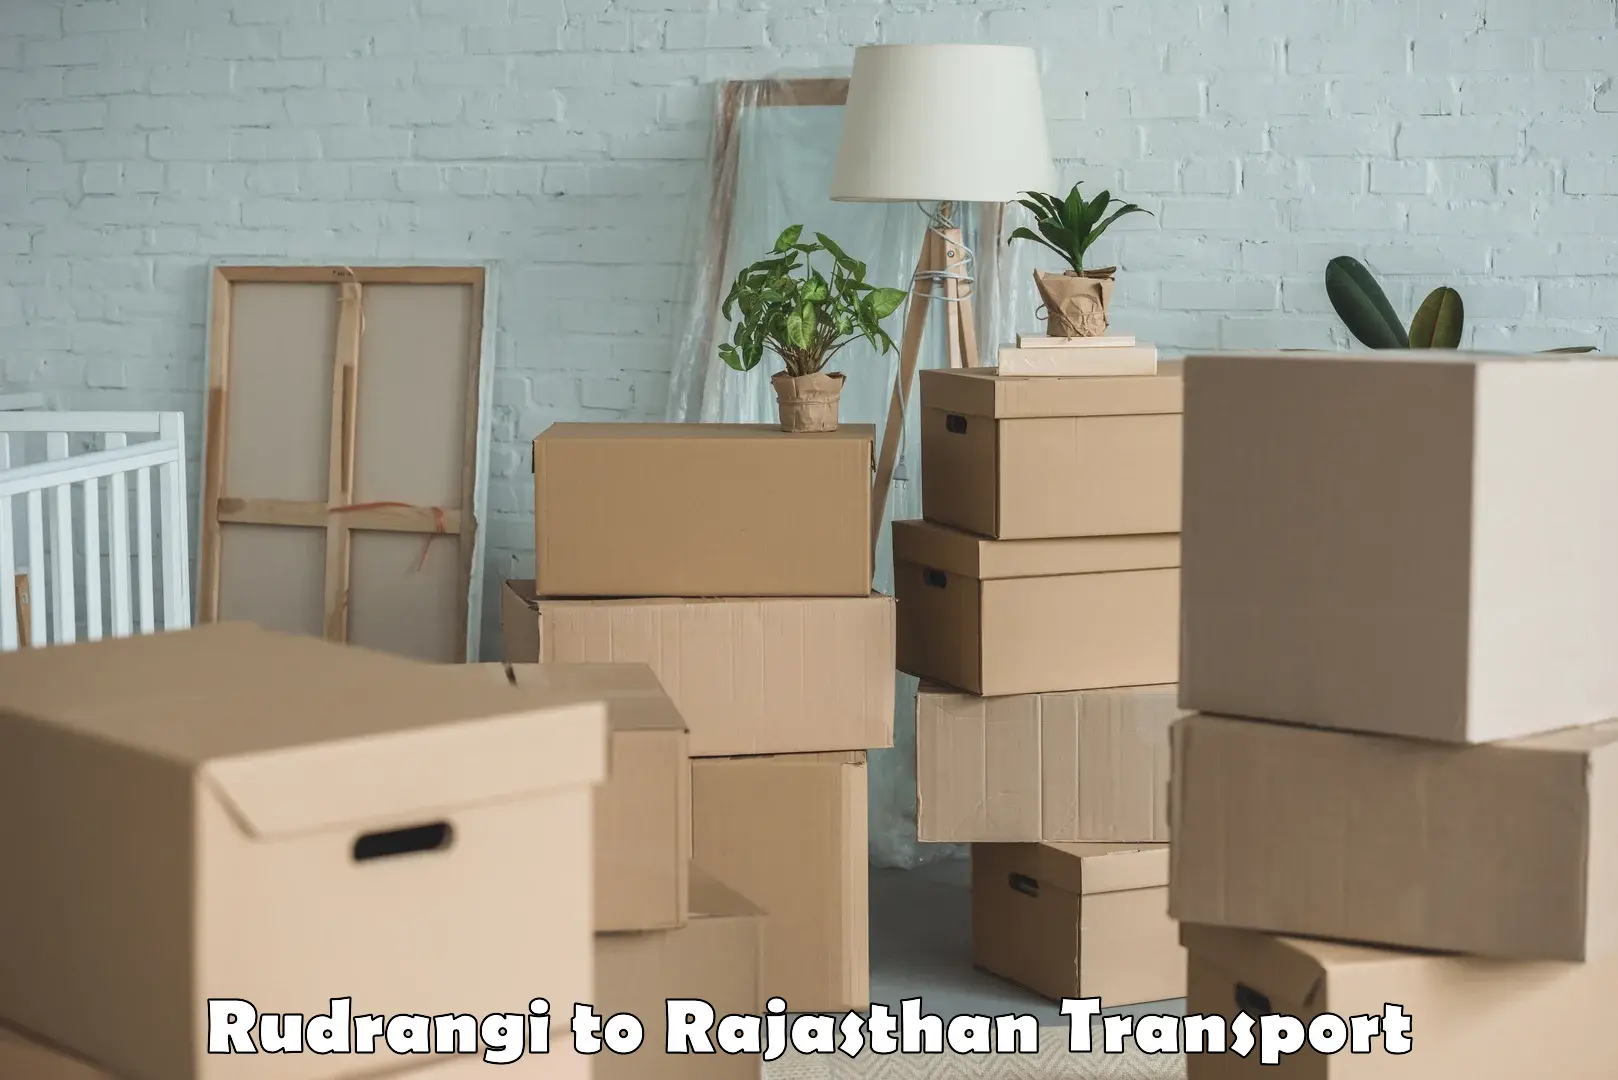 Container transport service Rudrangi to Kumbhalgarh